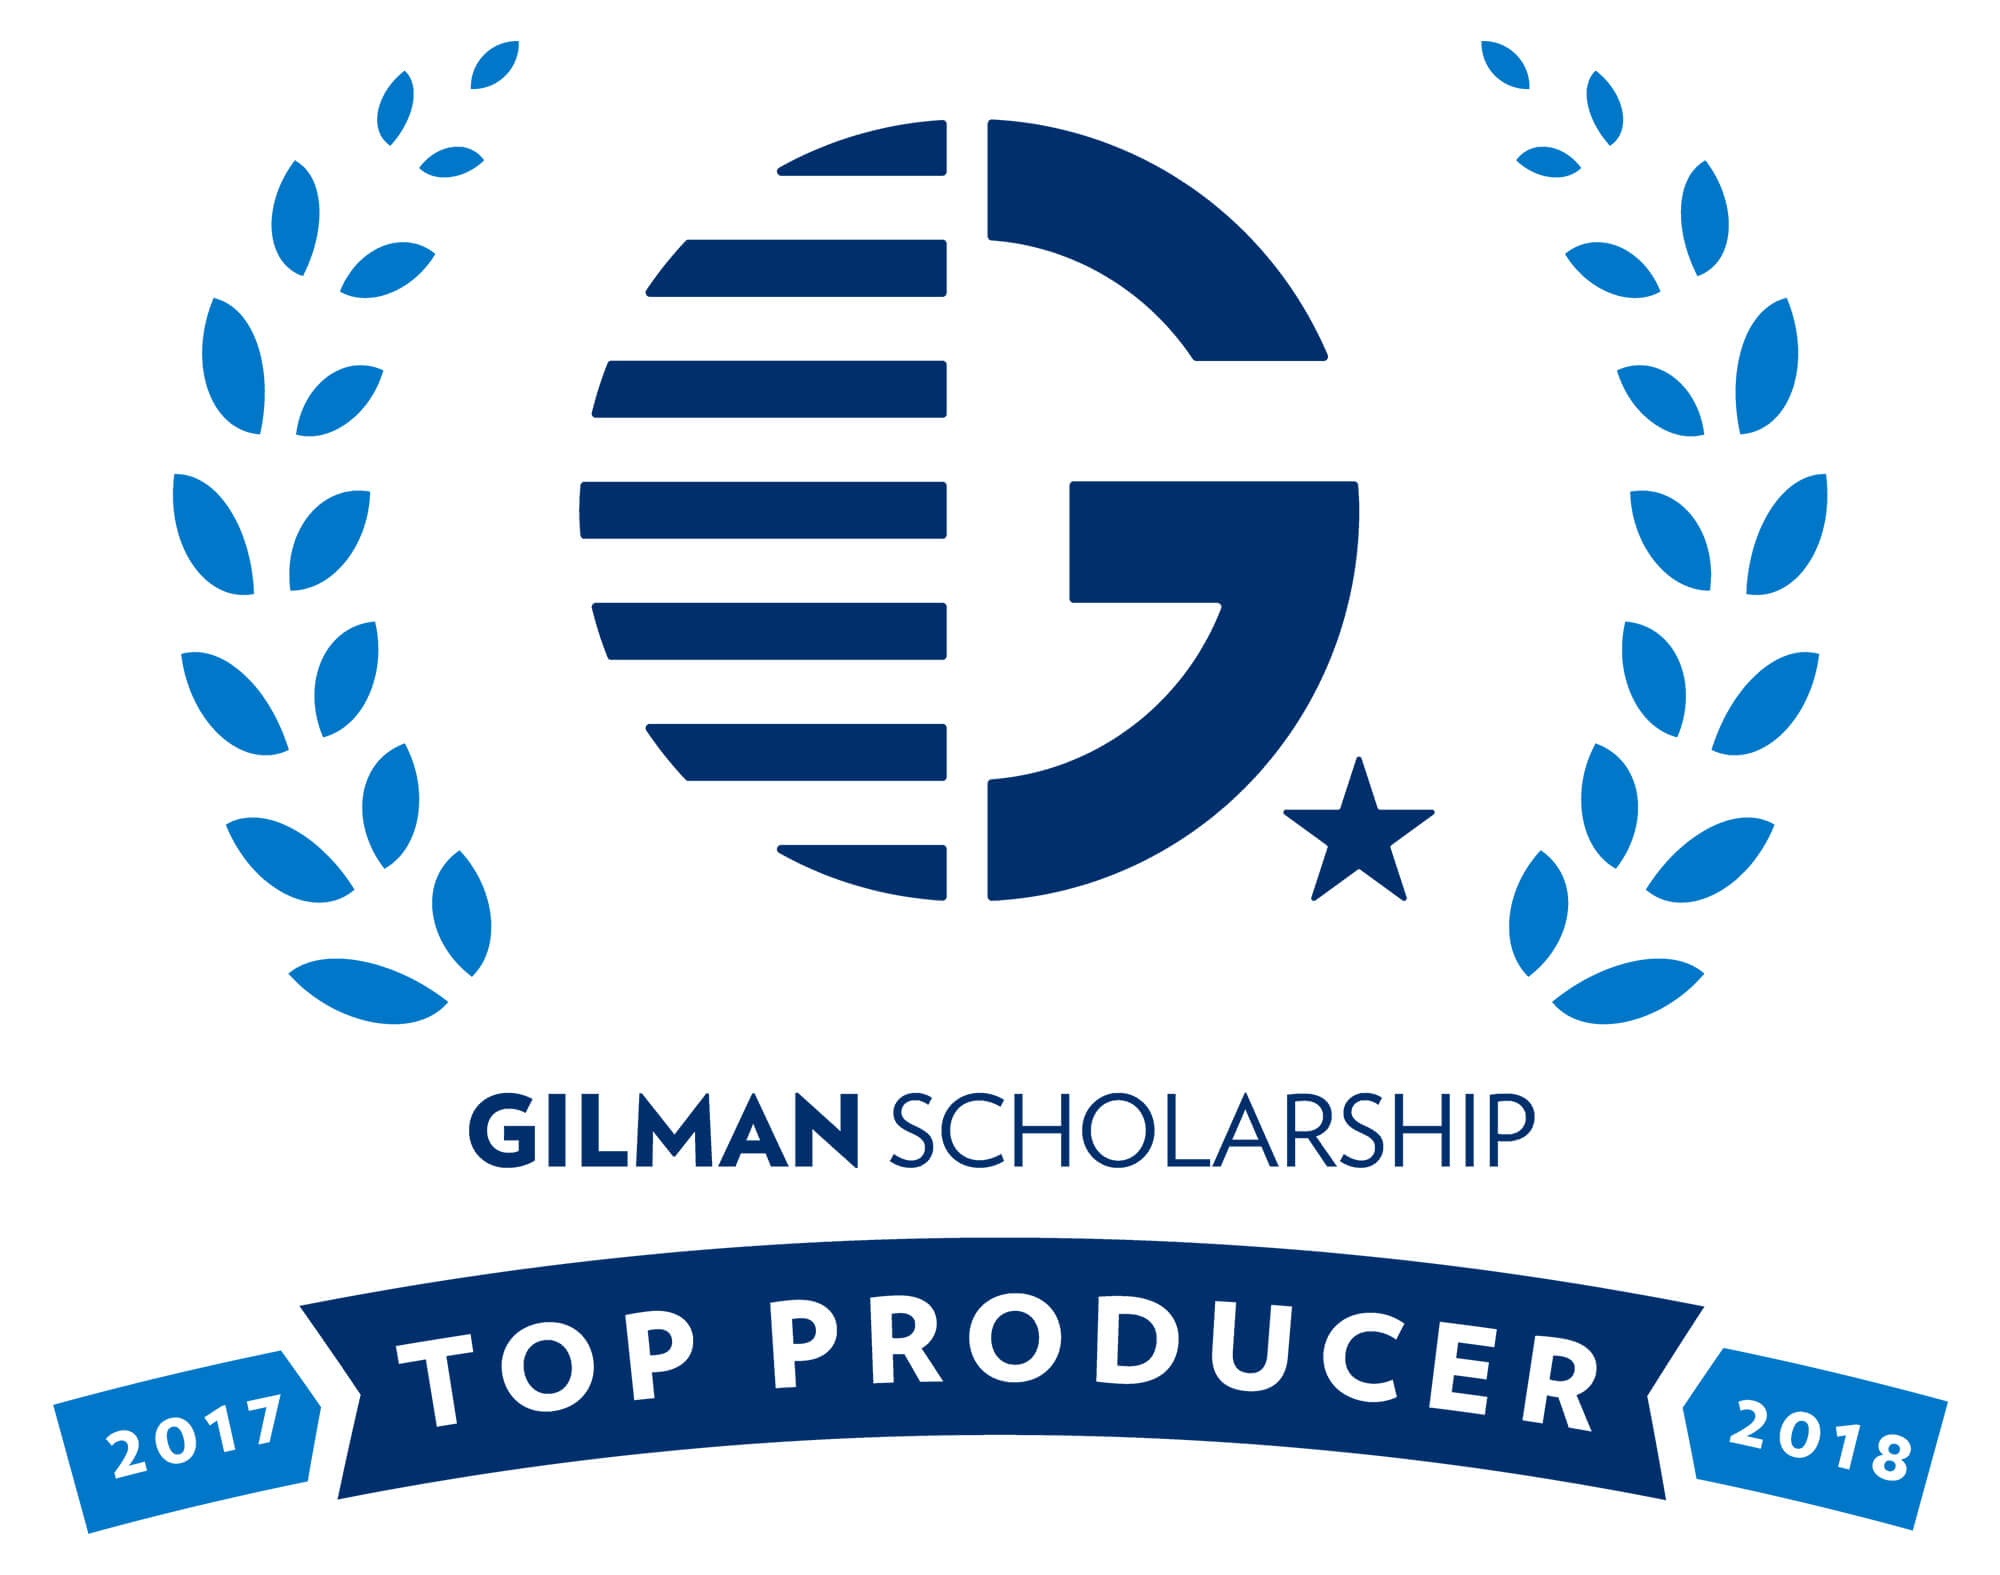 A logo that has the Gilman scholarship logo.